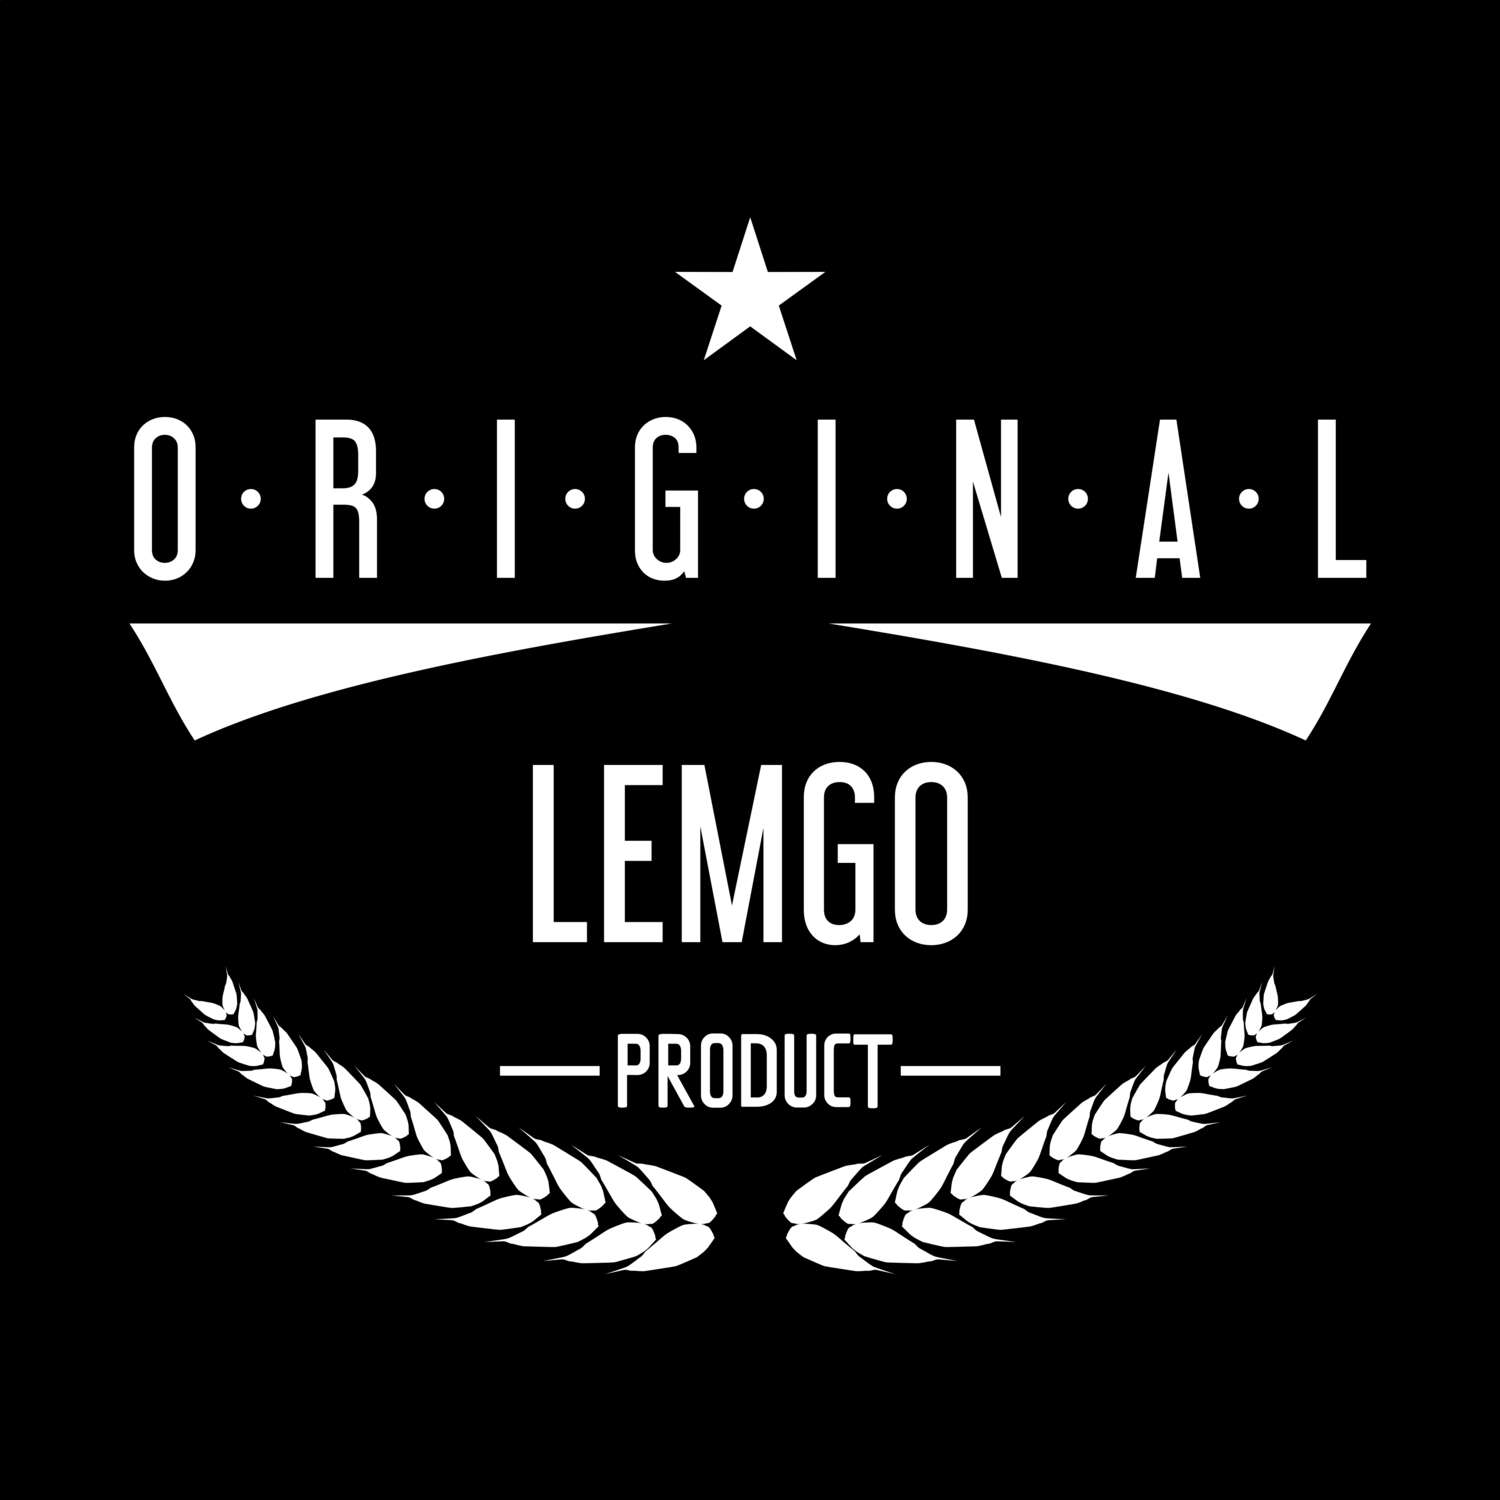 Lemgo T-Shirt »Original Product«